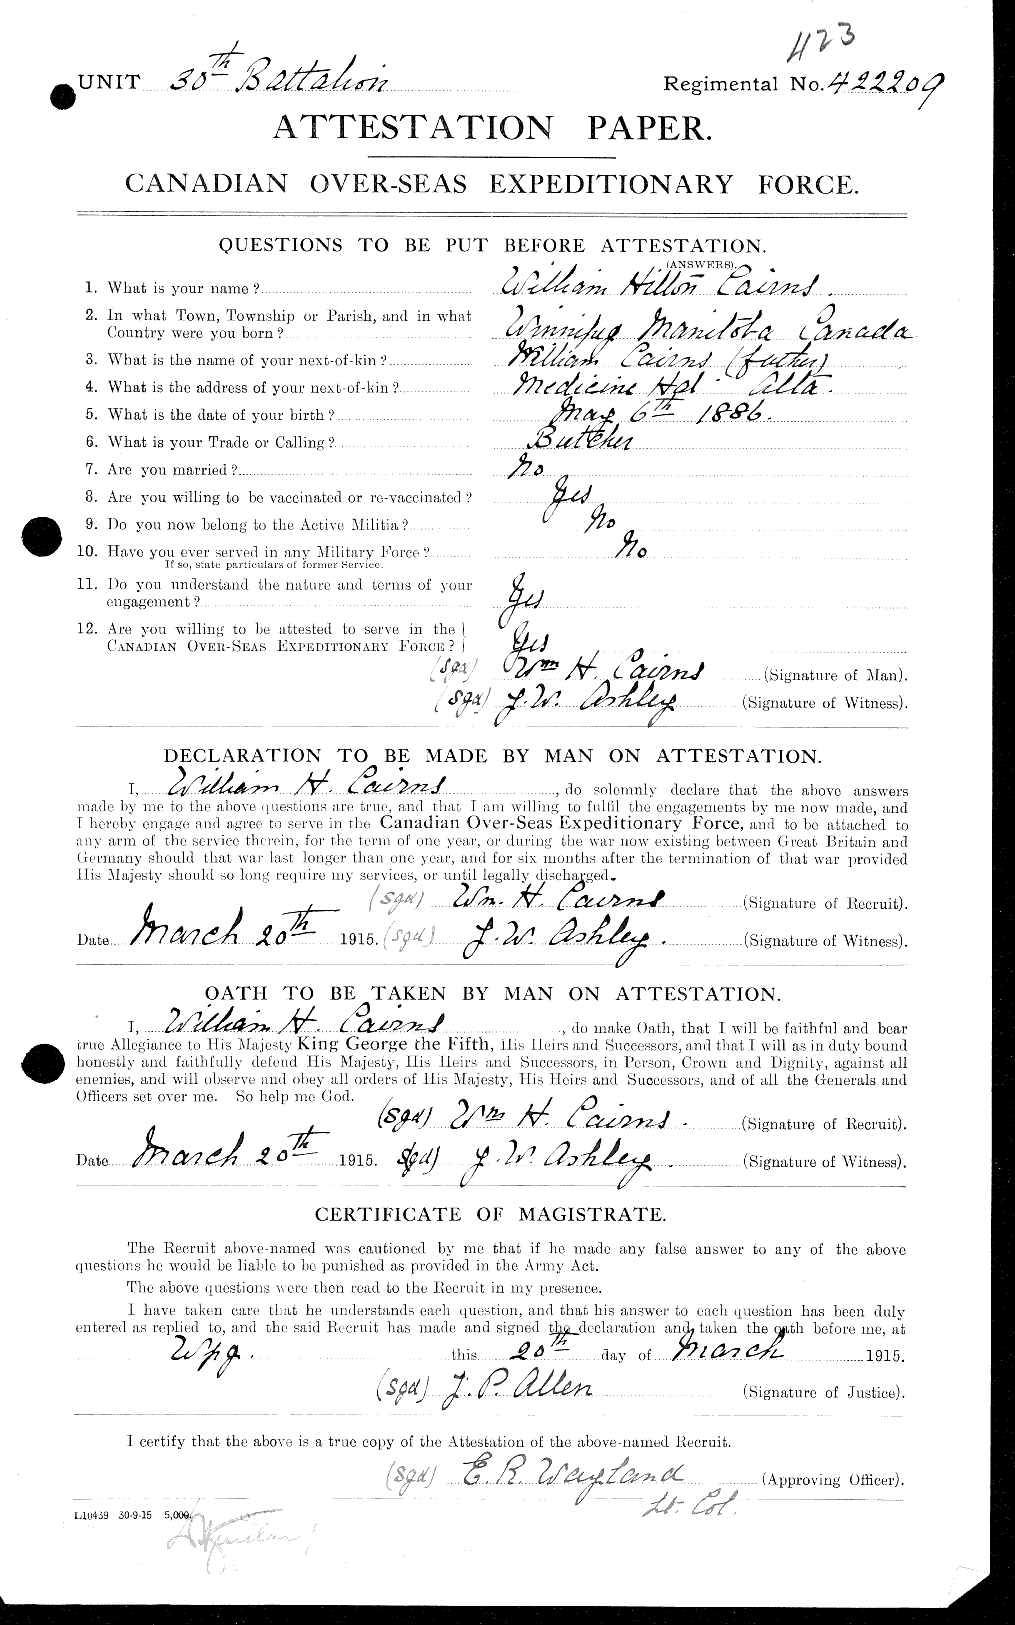 Dossiers du Personnel de la Première Guerre mondiale - CEC 000544a